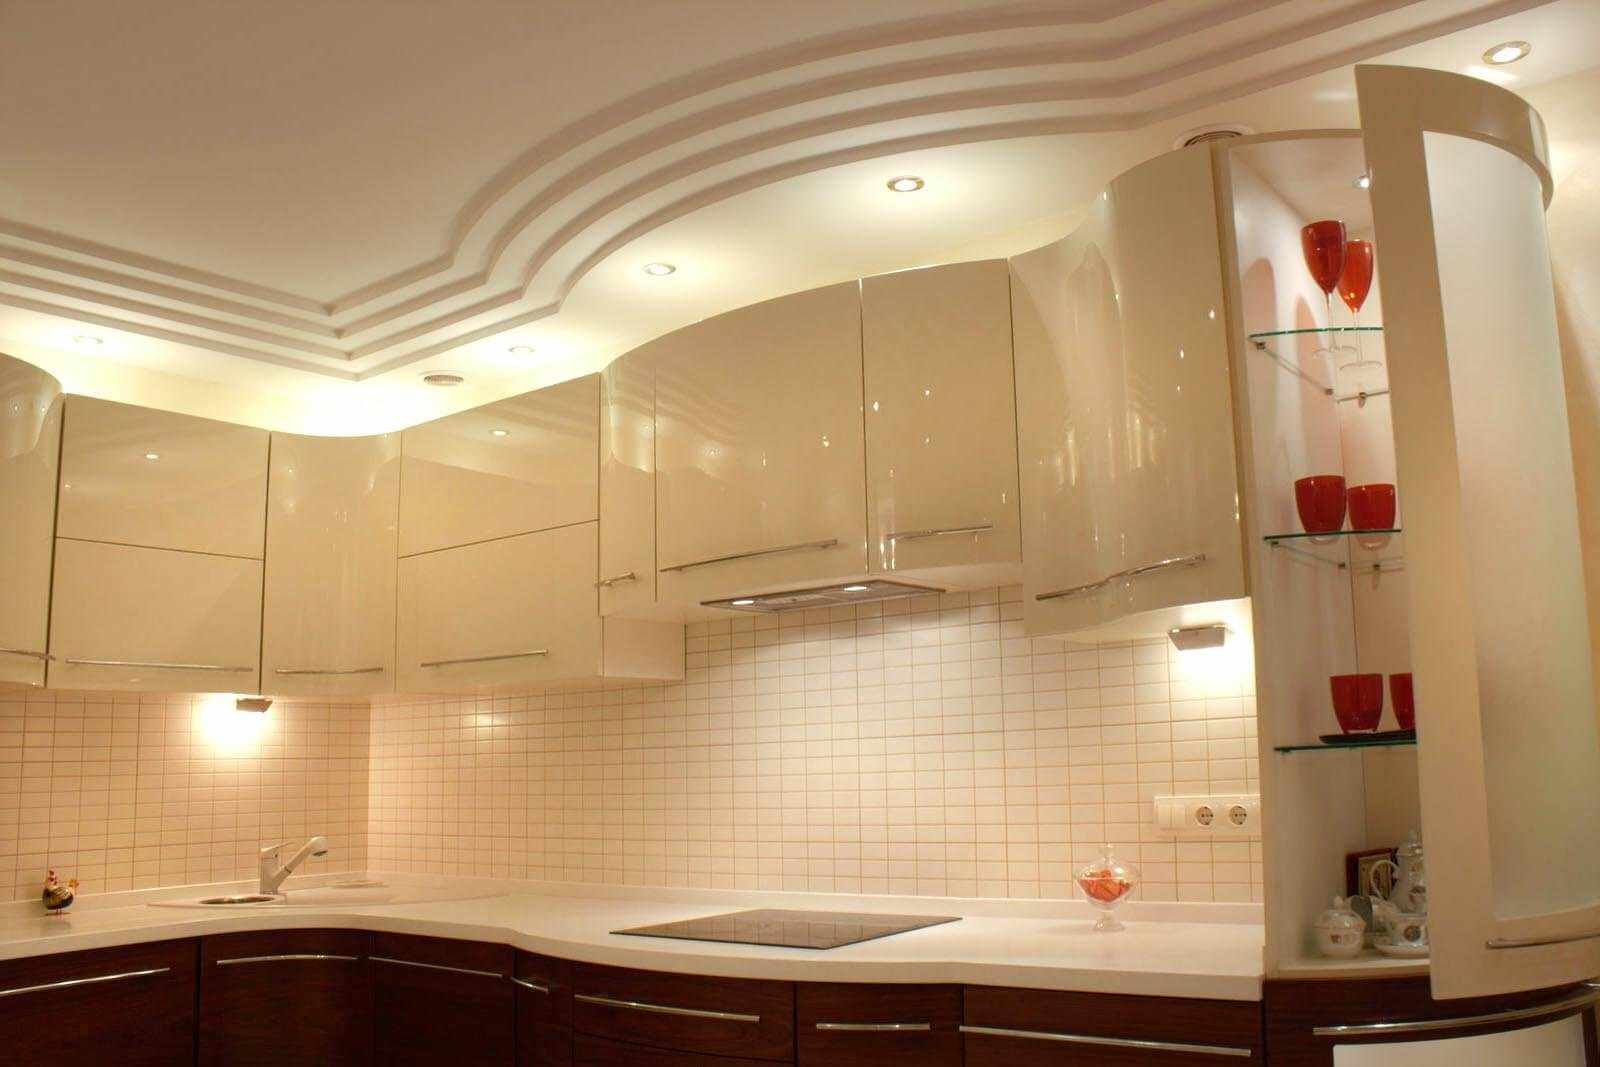 Un exemple de plafond de cuisine